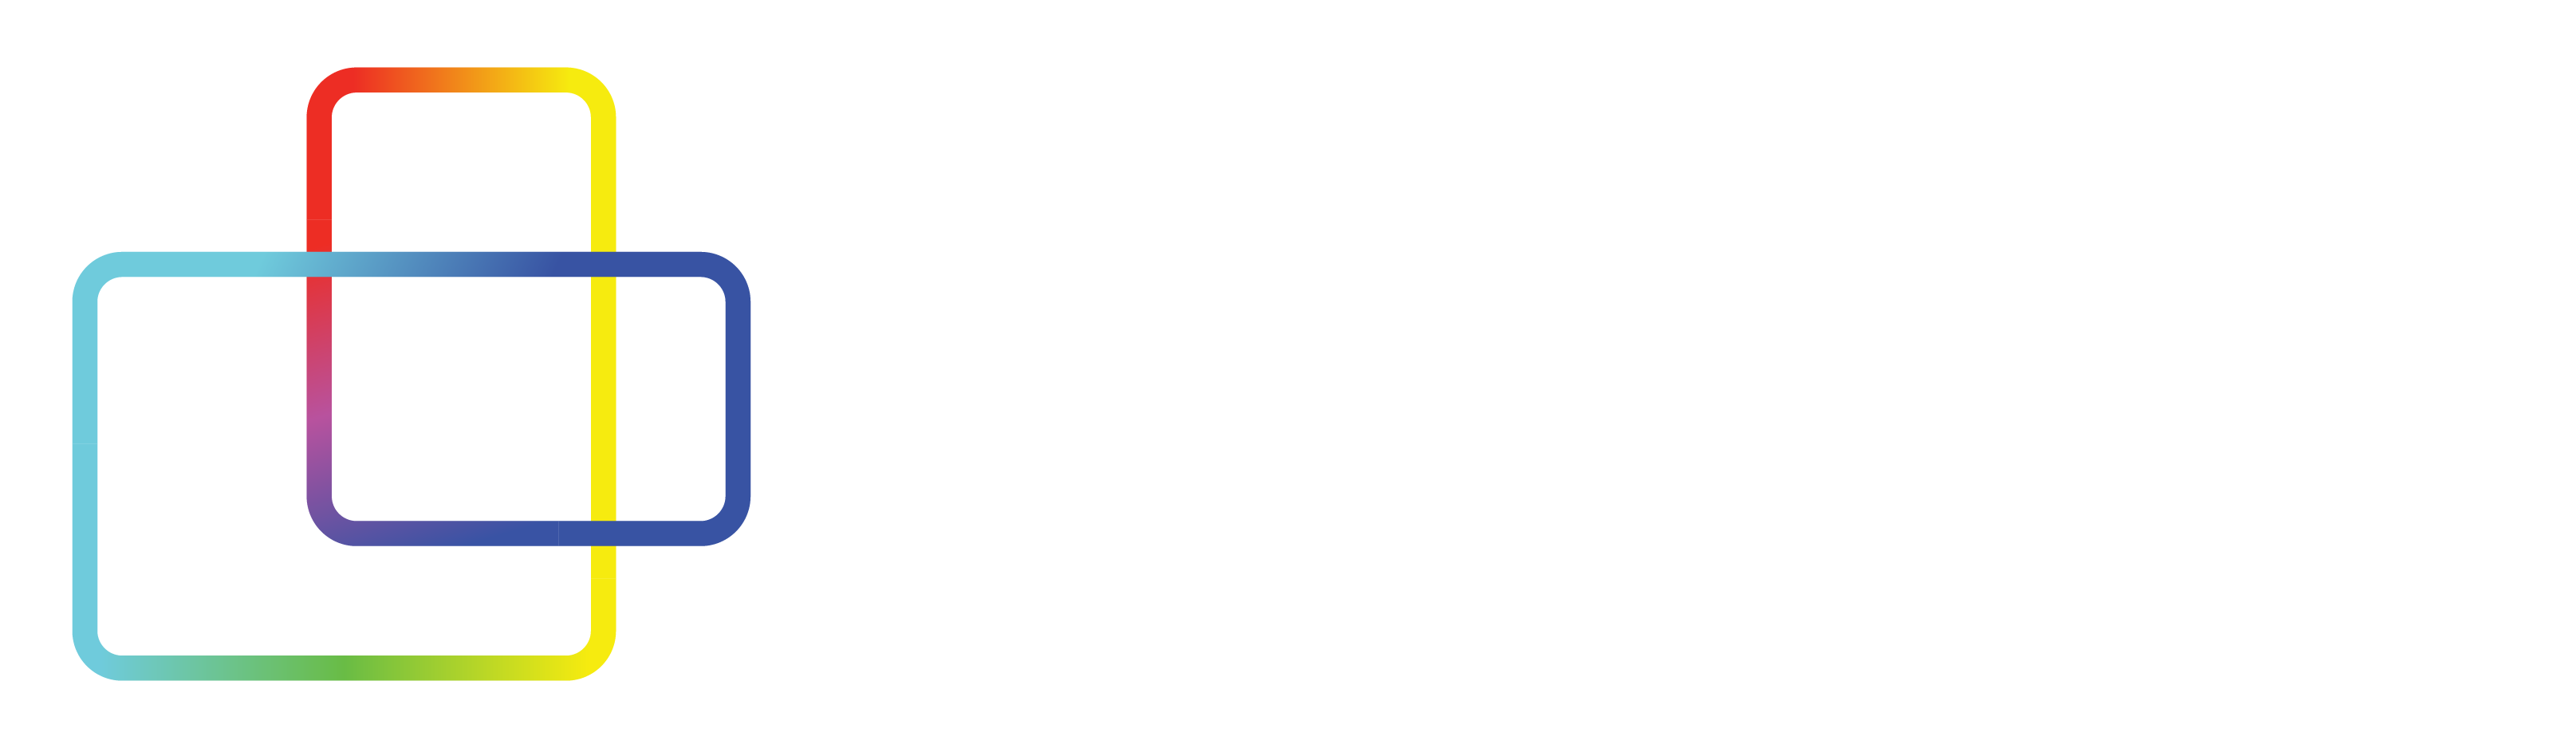 web_logo_whitefont